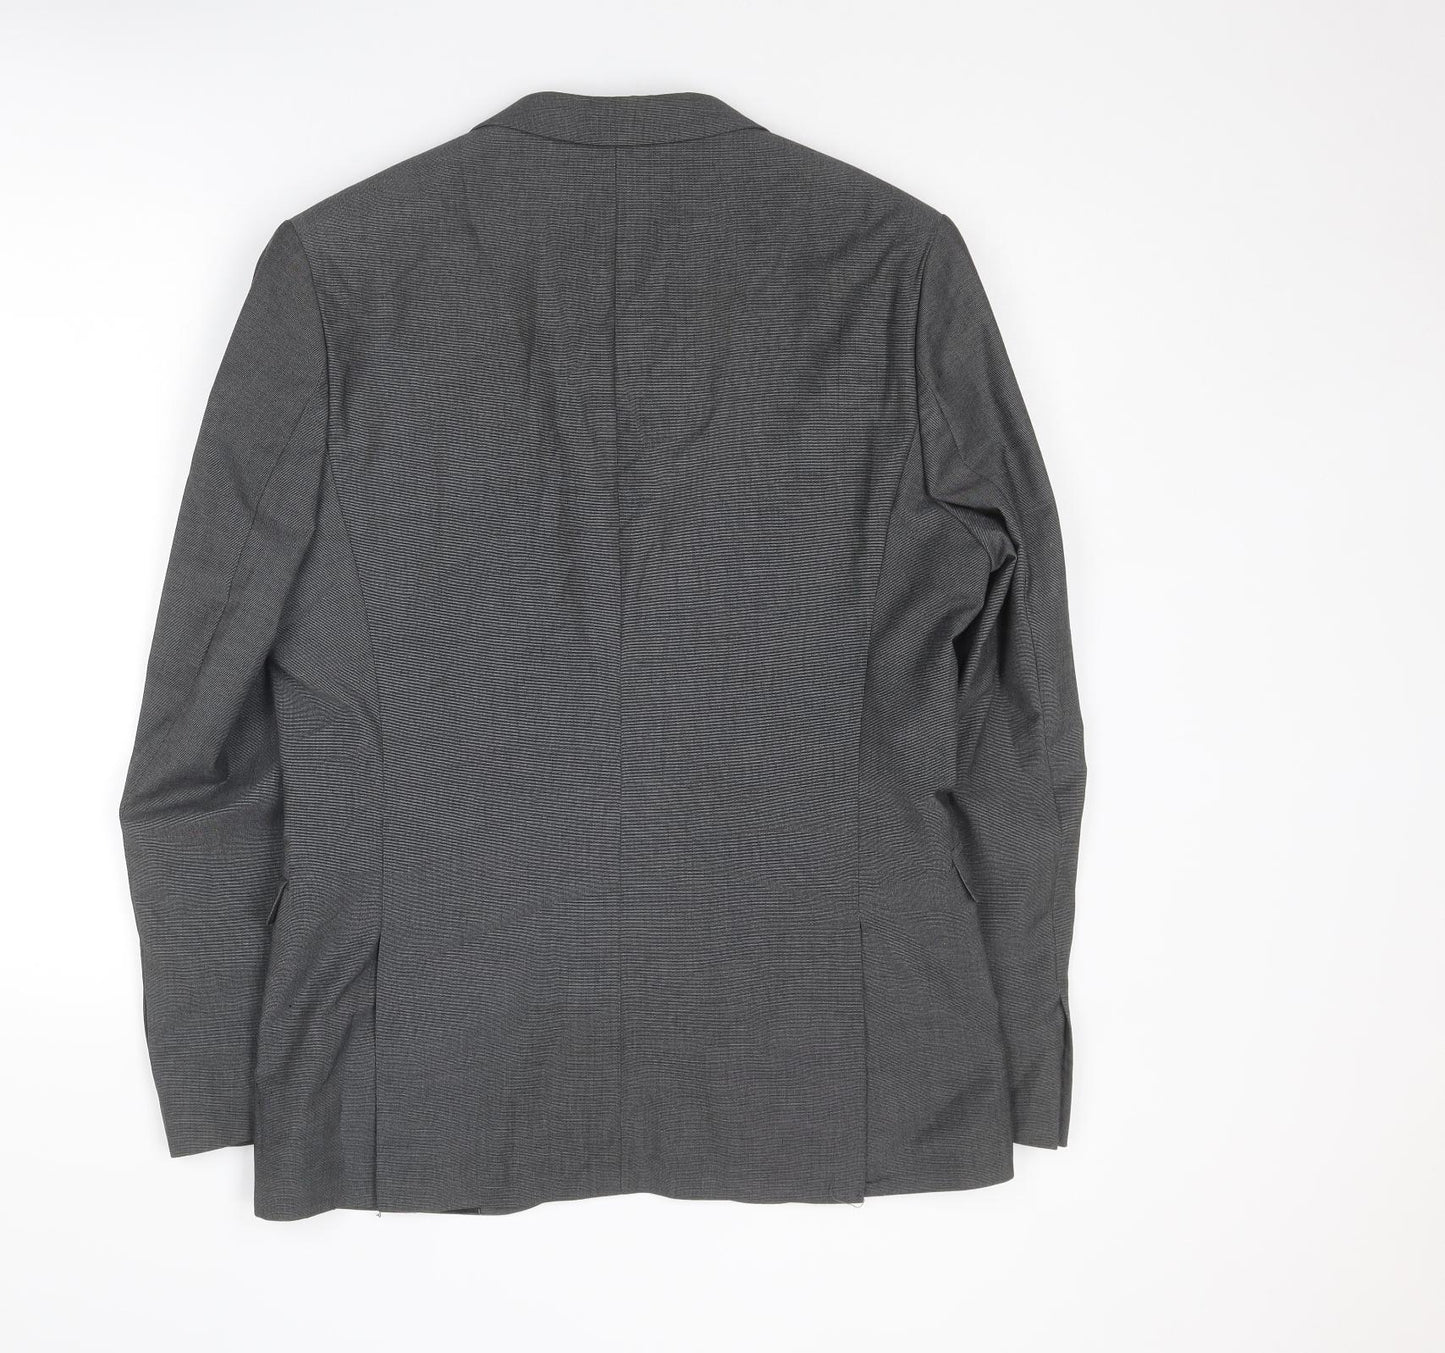 H&M Mens Grey Polyester Jacket Suit Jacket Size L Regular